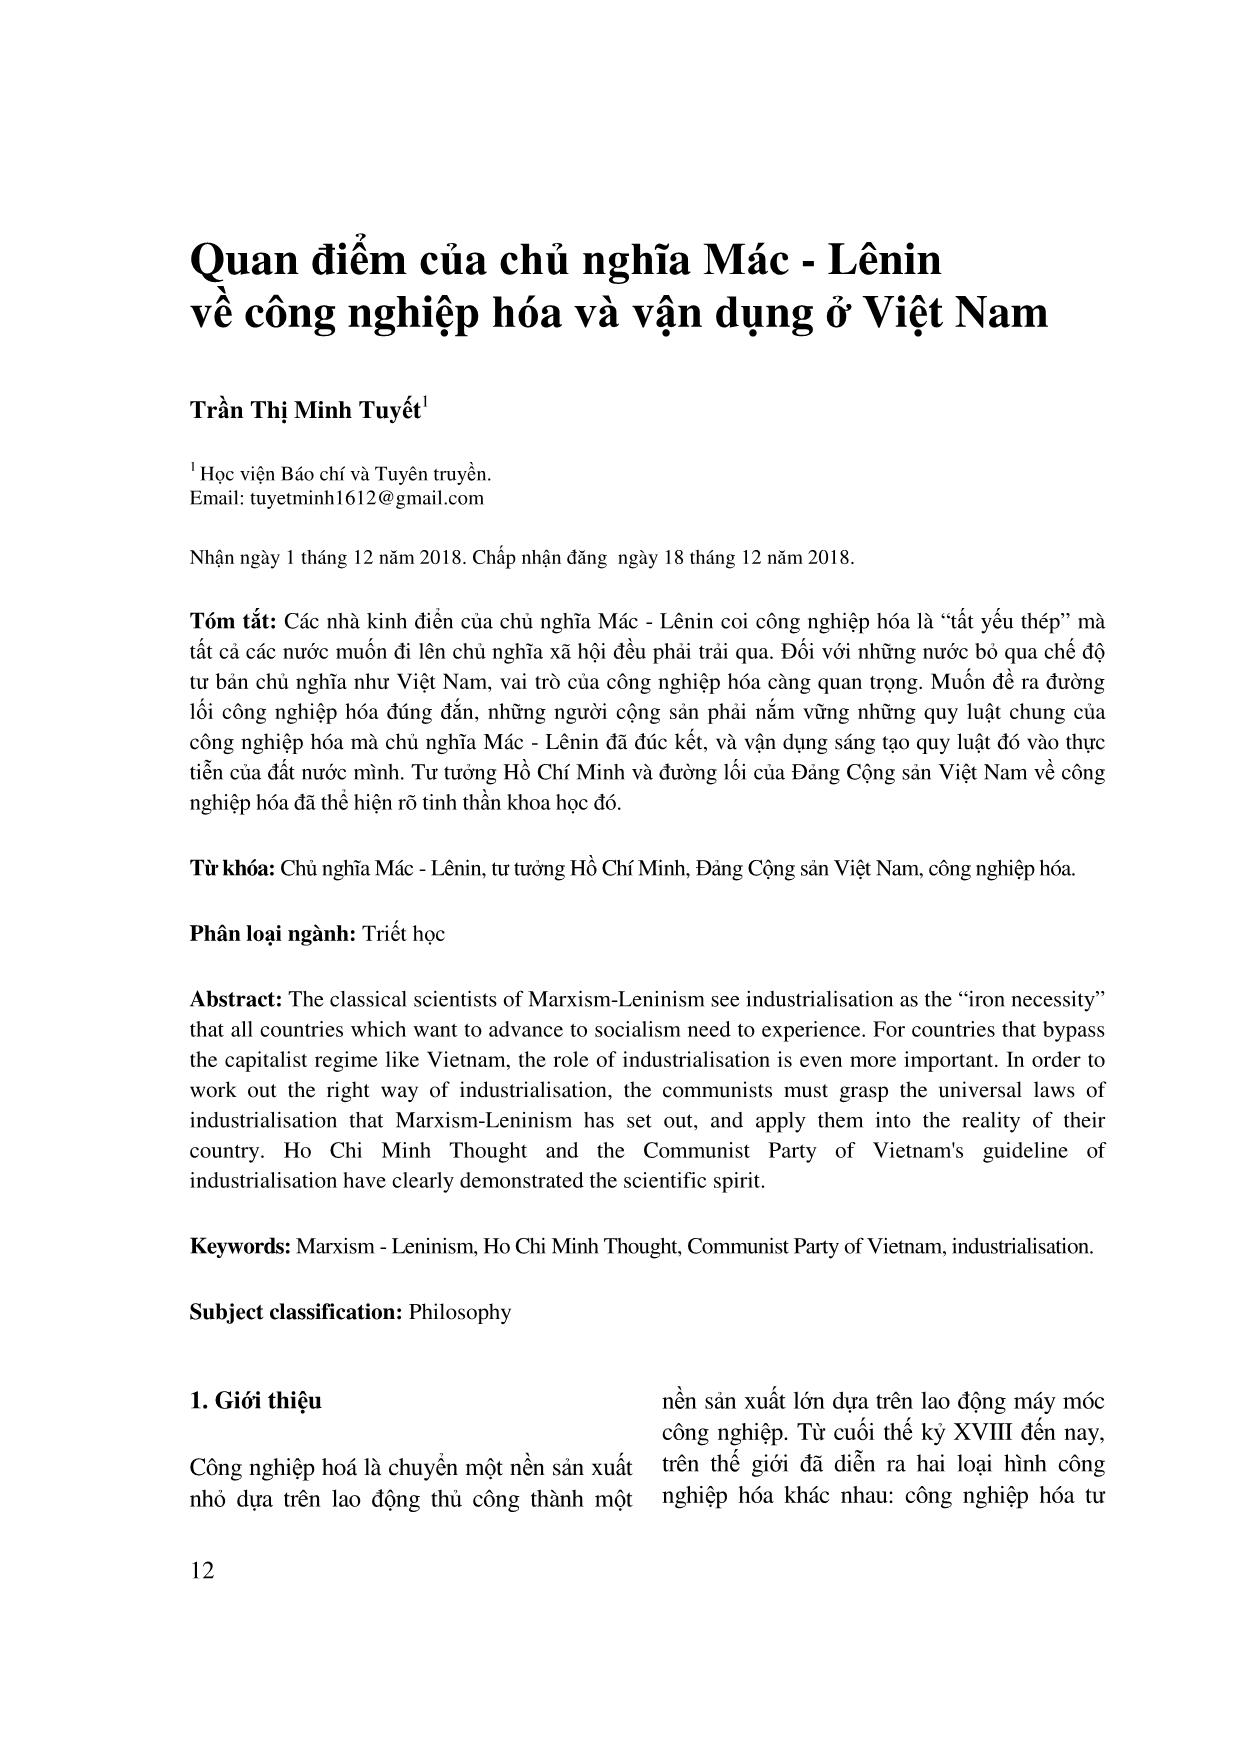 Quan điểm của chủ nghĩa Mác-Lênin về công nghiệp hóa và vận dụng ở Việt Nam trang 1